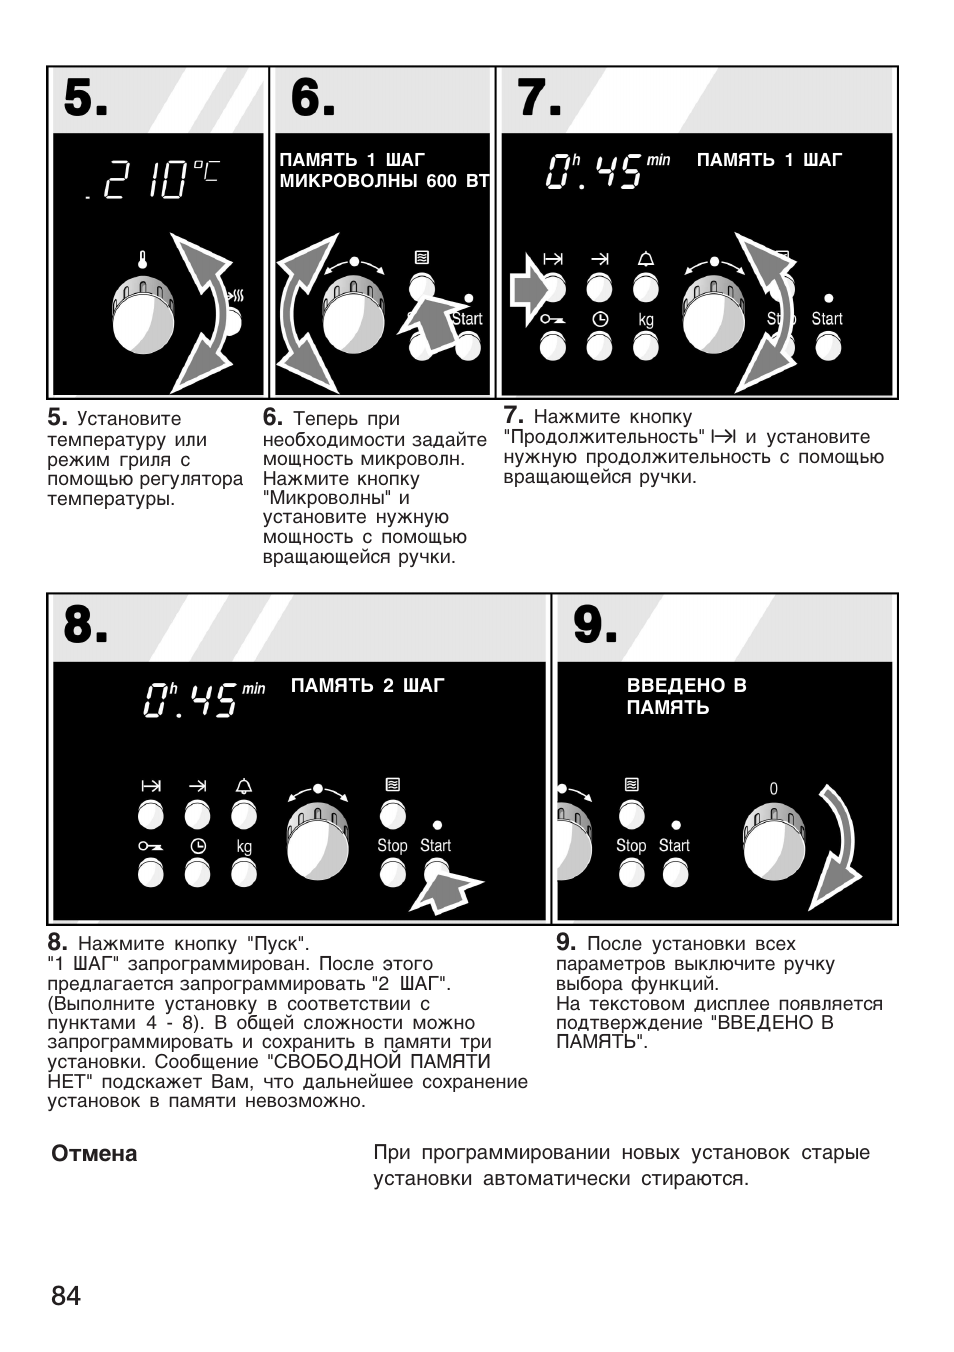 bosch духовой шкаф микроволновка инструкция